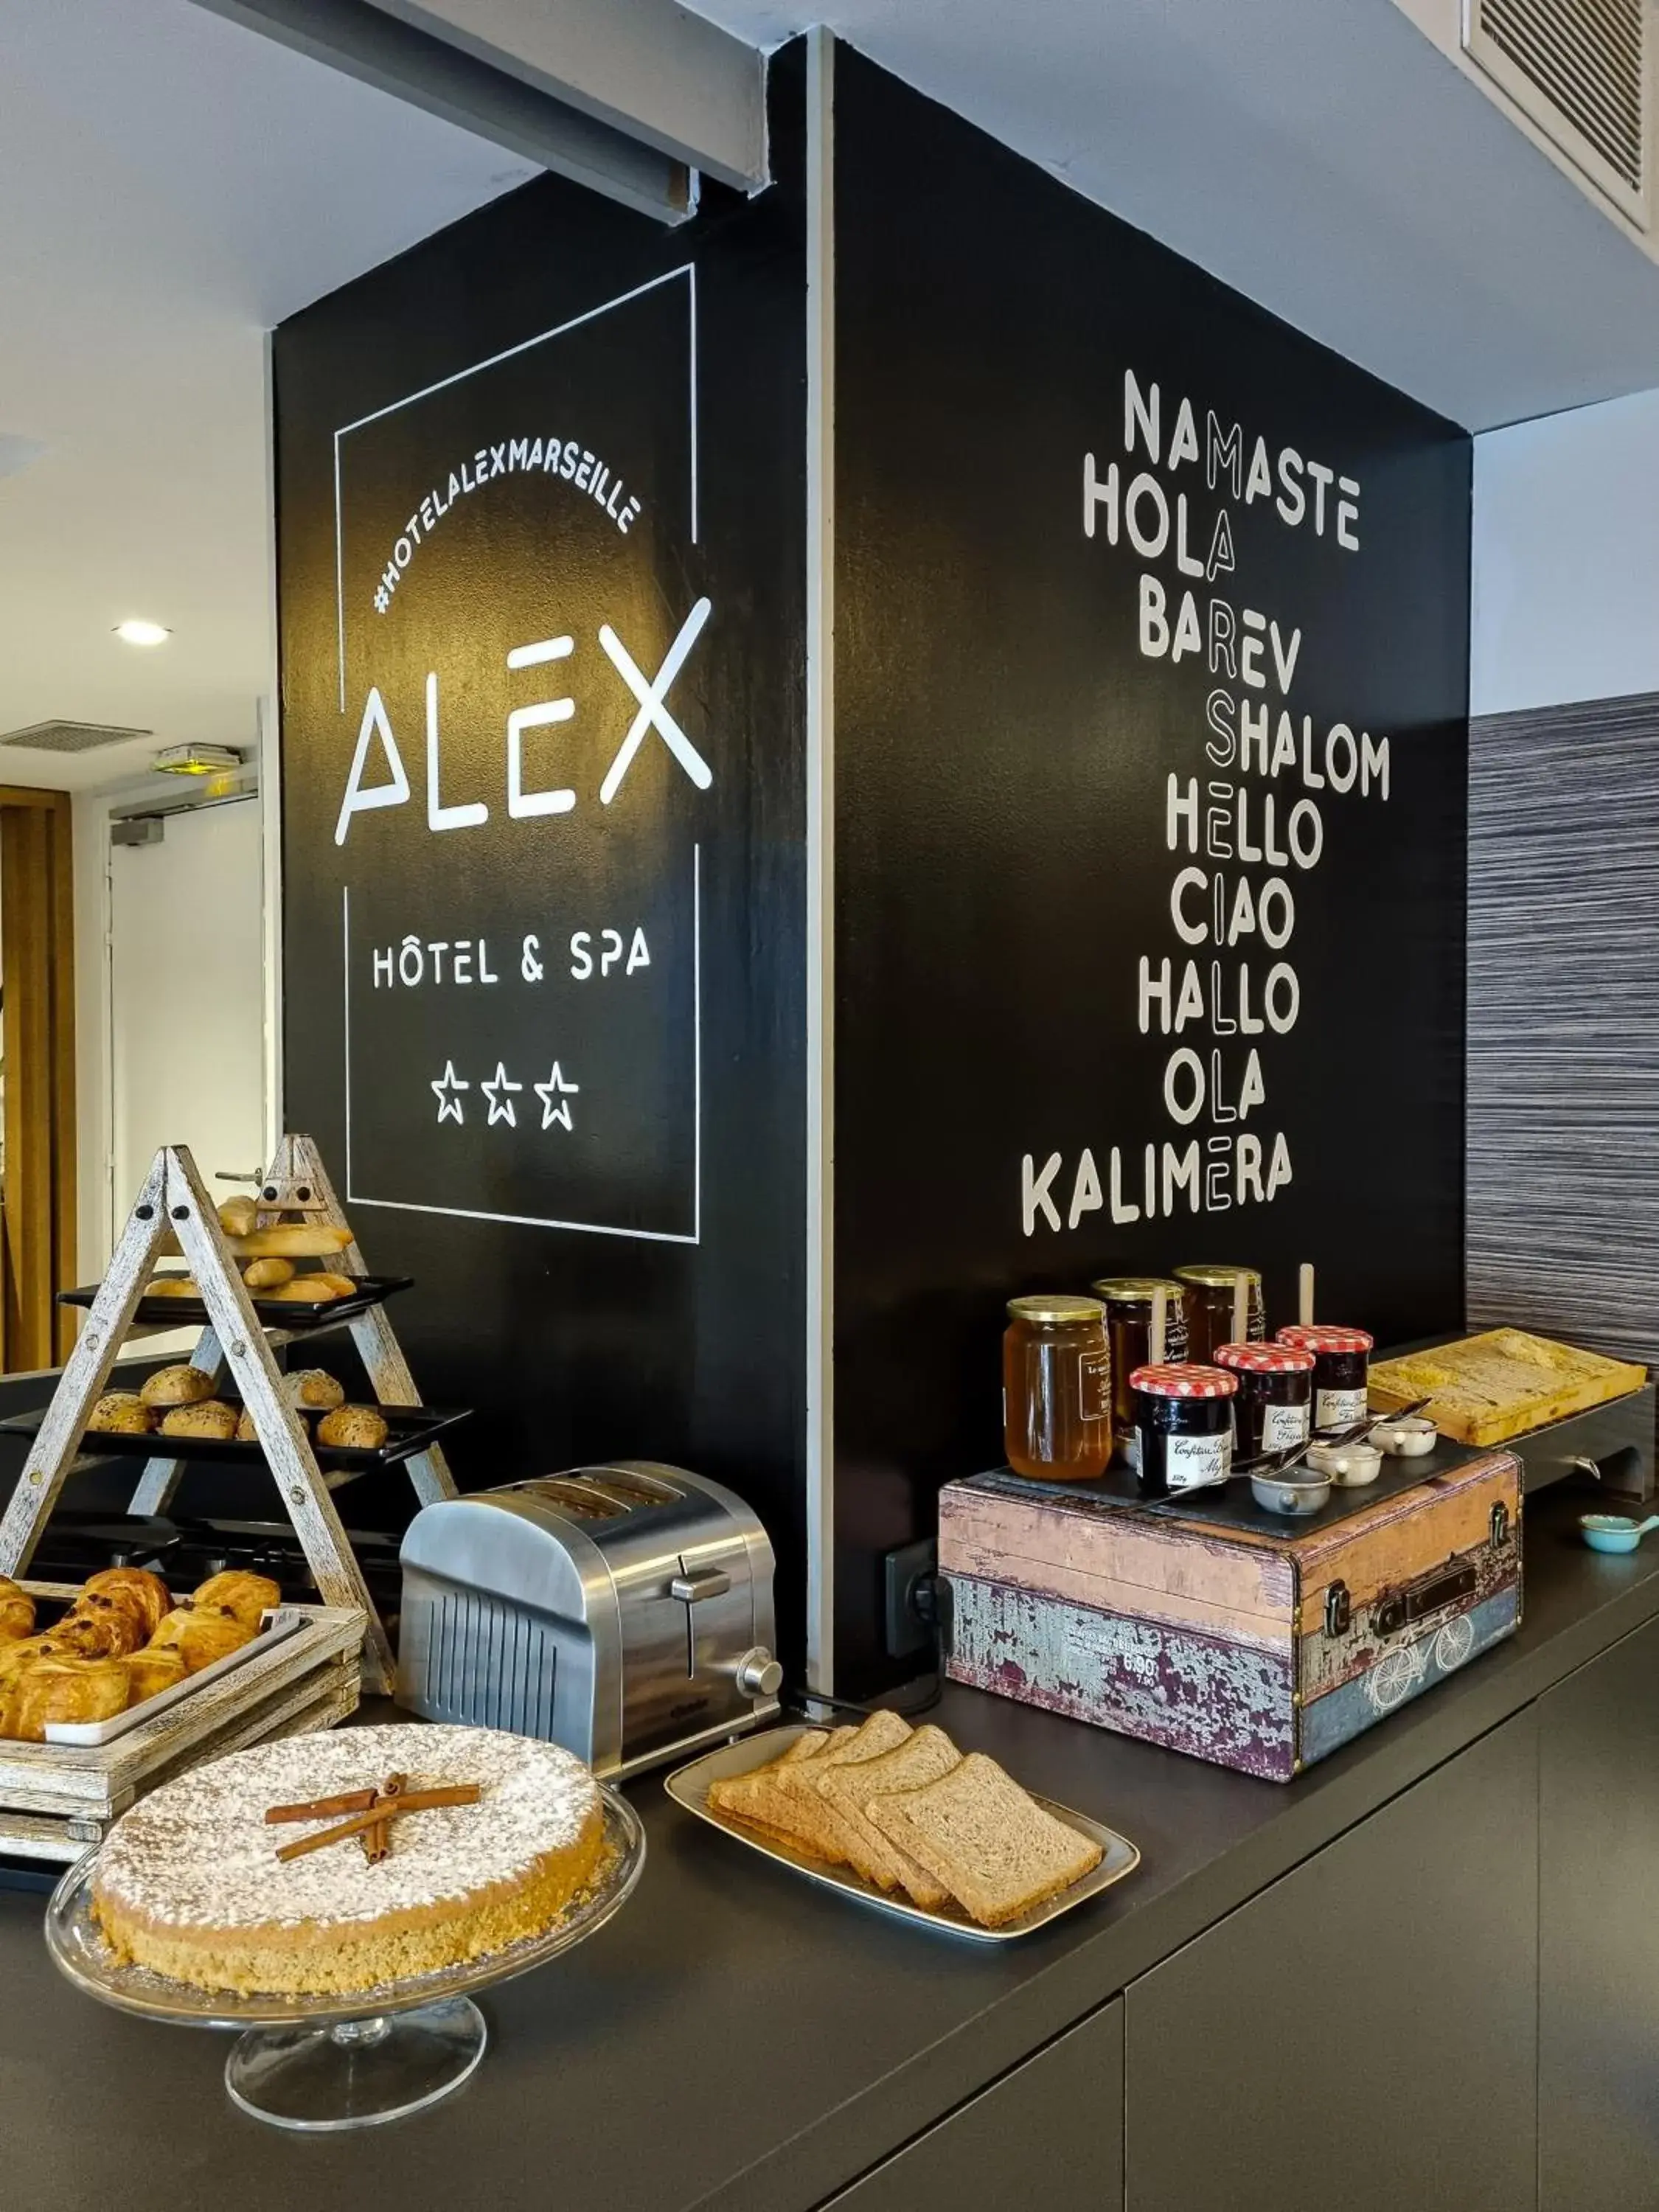 Breakfast in Alex Hotel & Spa